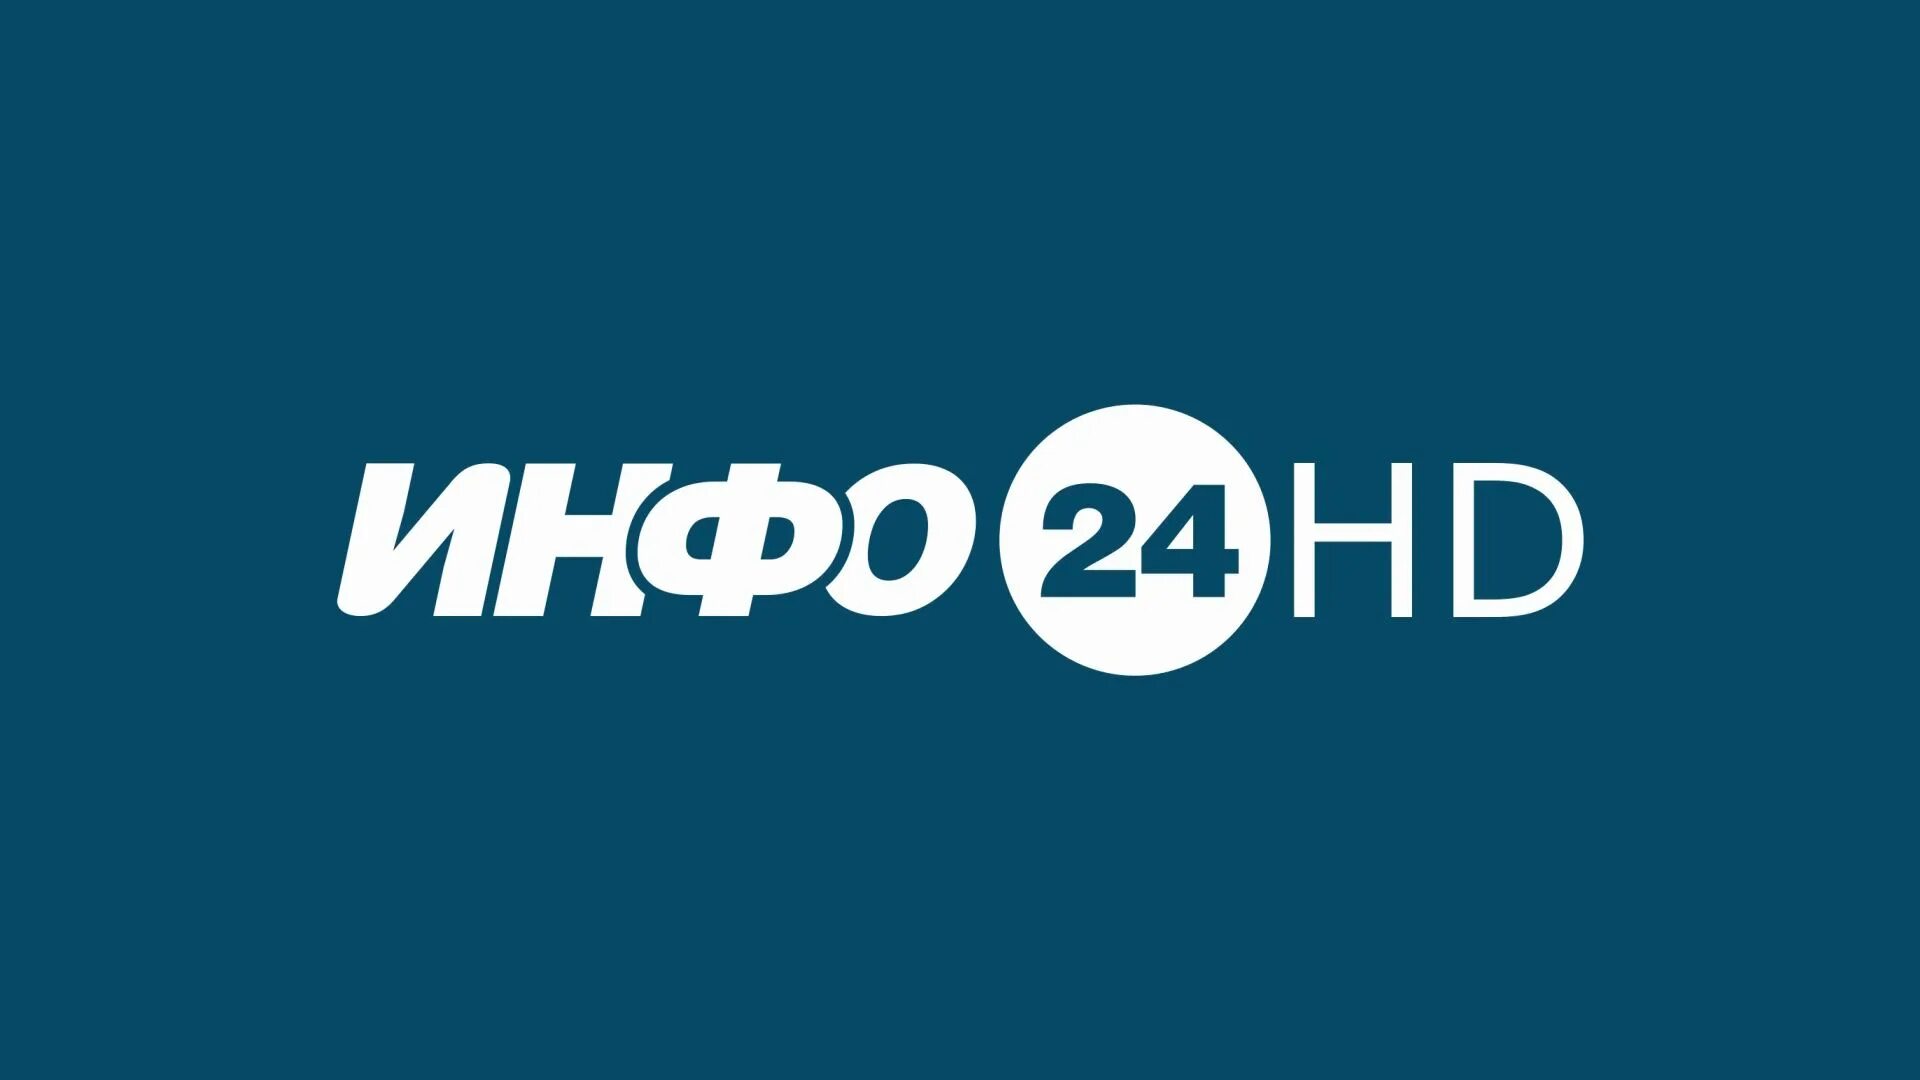 Инфо логотип. Телеканал. Инфо 24 Шадринск. Телеканал 24hd.